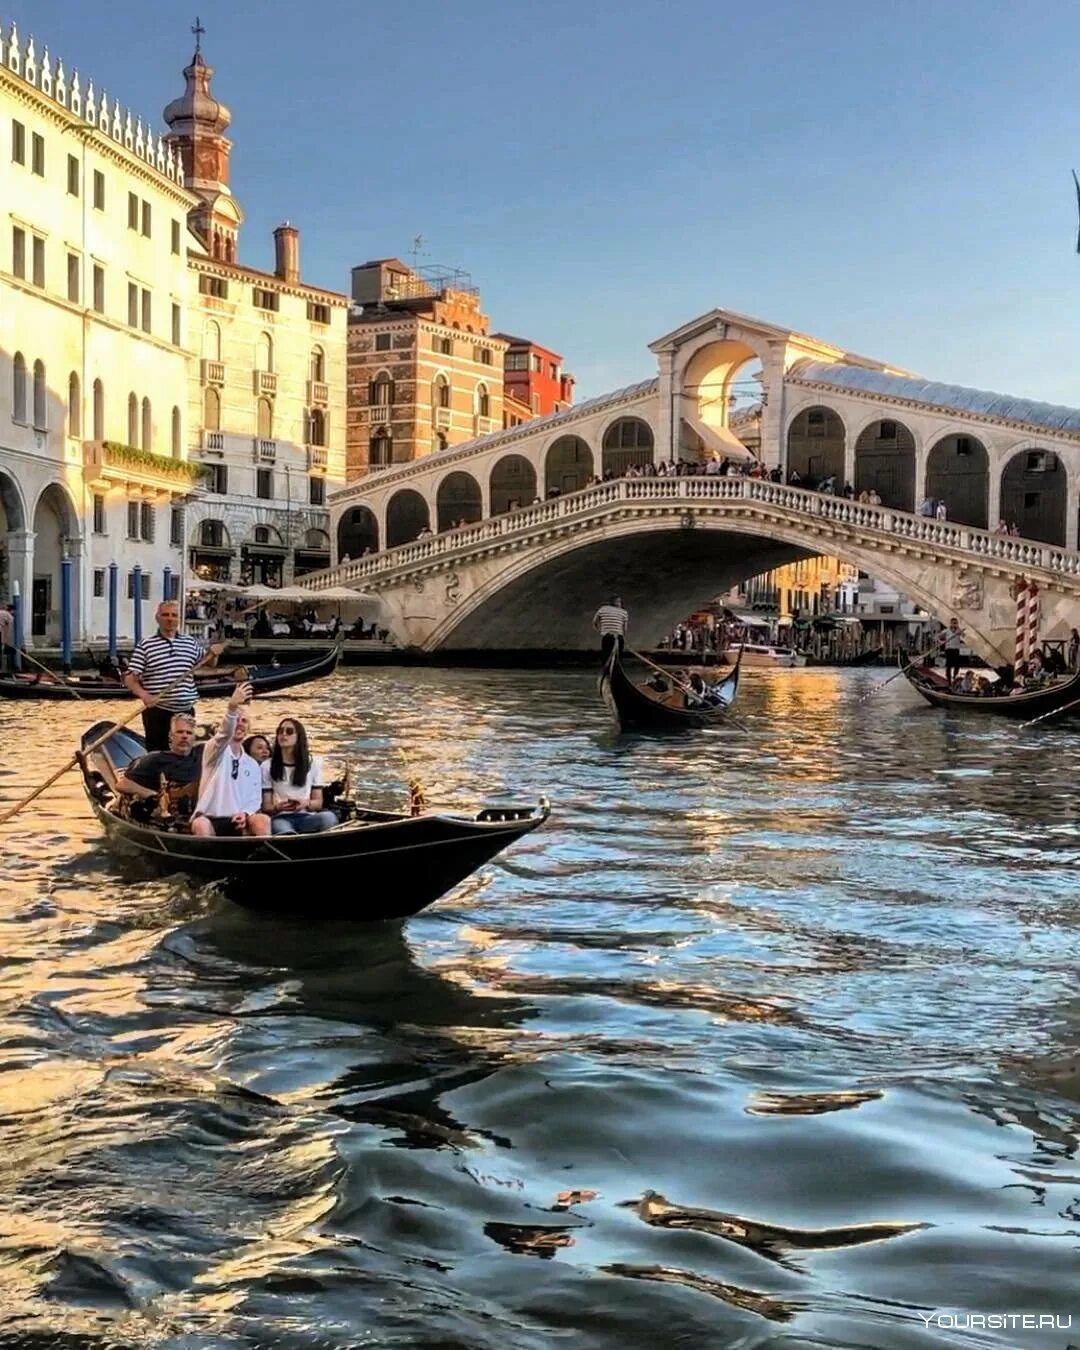 Венеция, Гранд канал, Риальто. Мост Риальто Венеция. Венеция (коммуна) архитектура Венеции. Италия Гранд канал (г. Венеция). Italy travel